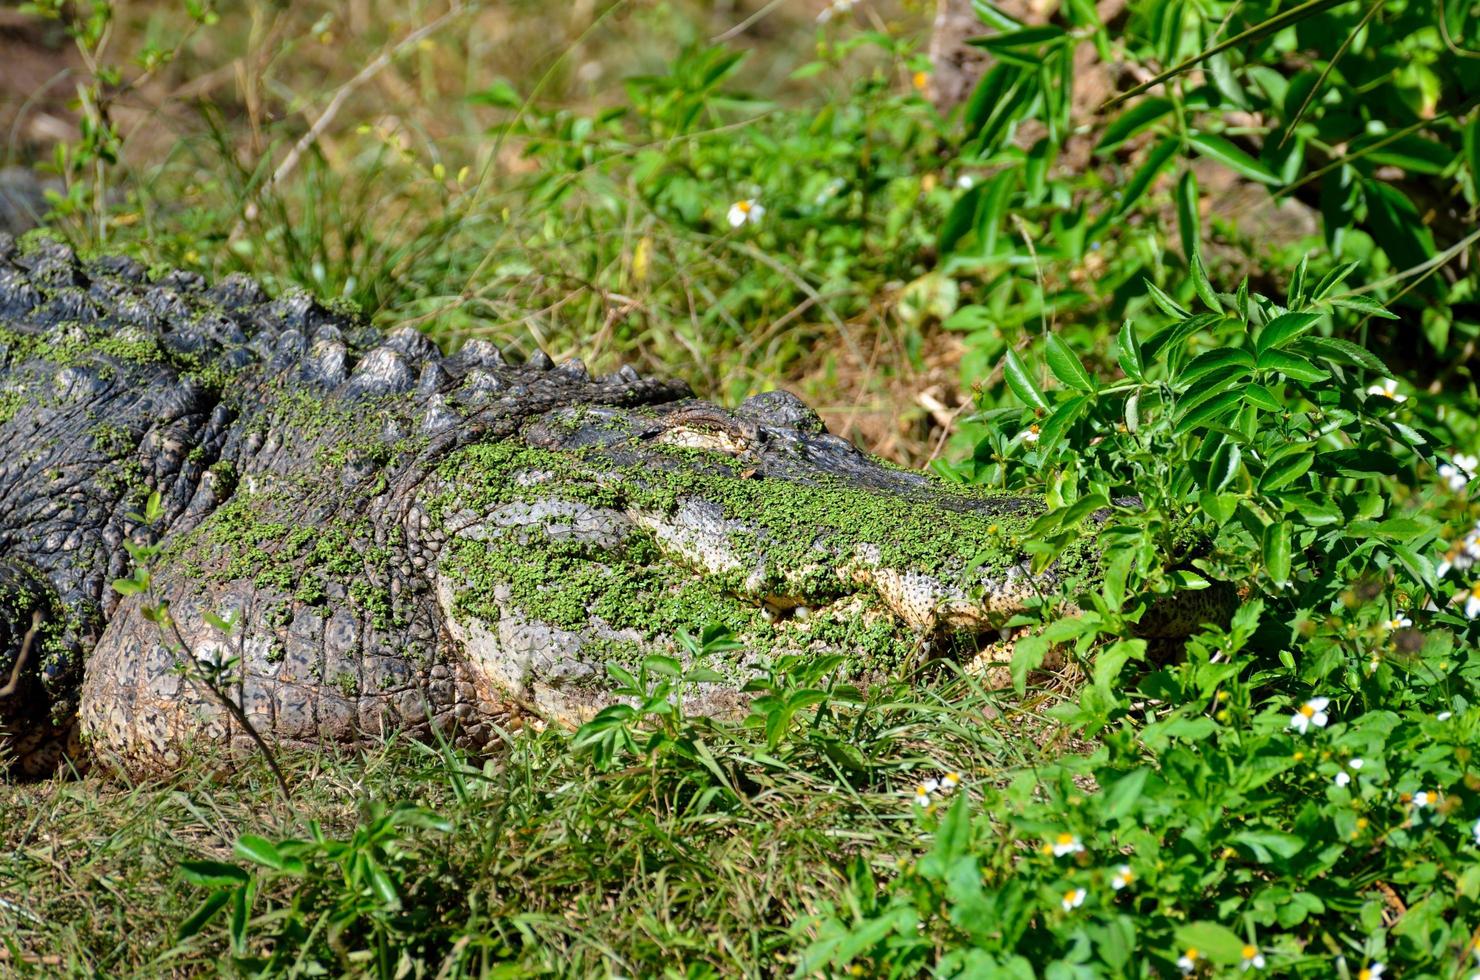 Alligator in the wilderness photo